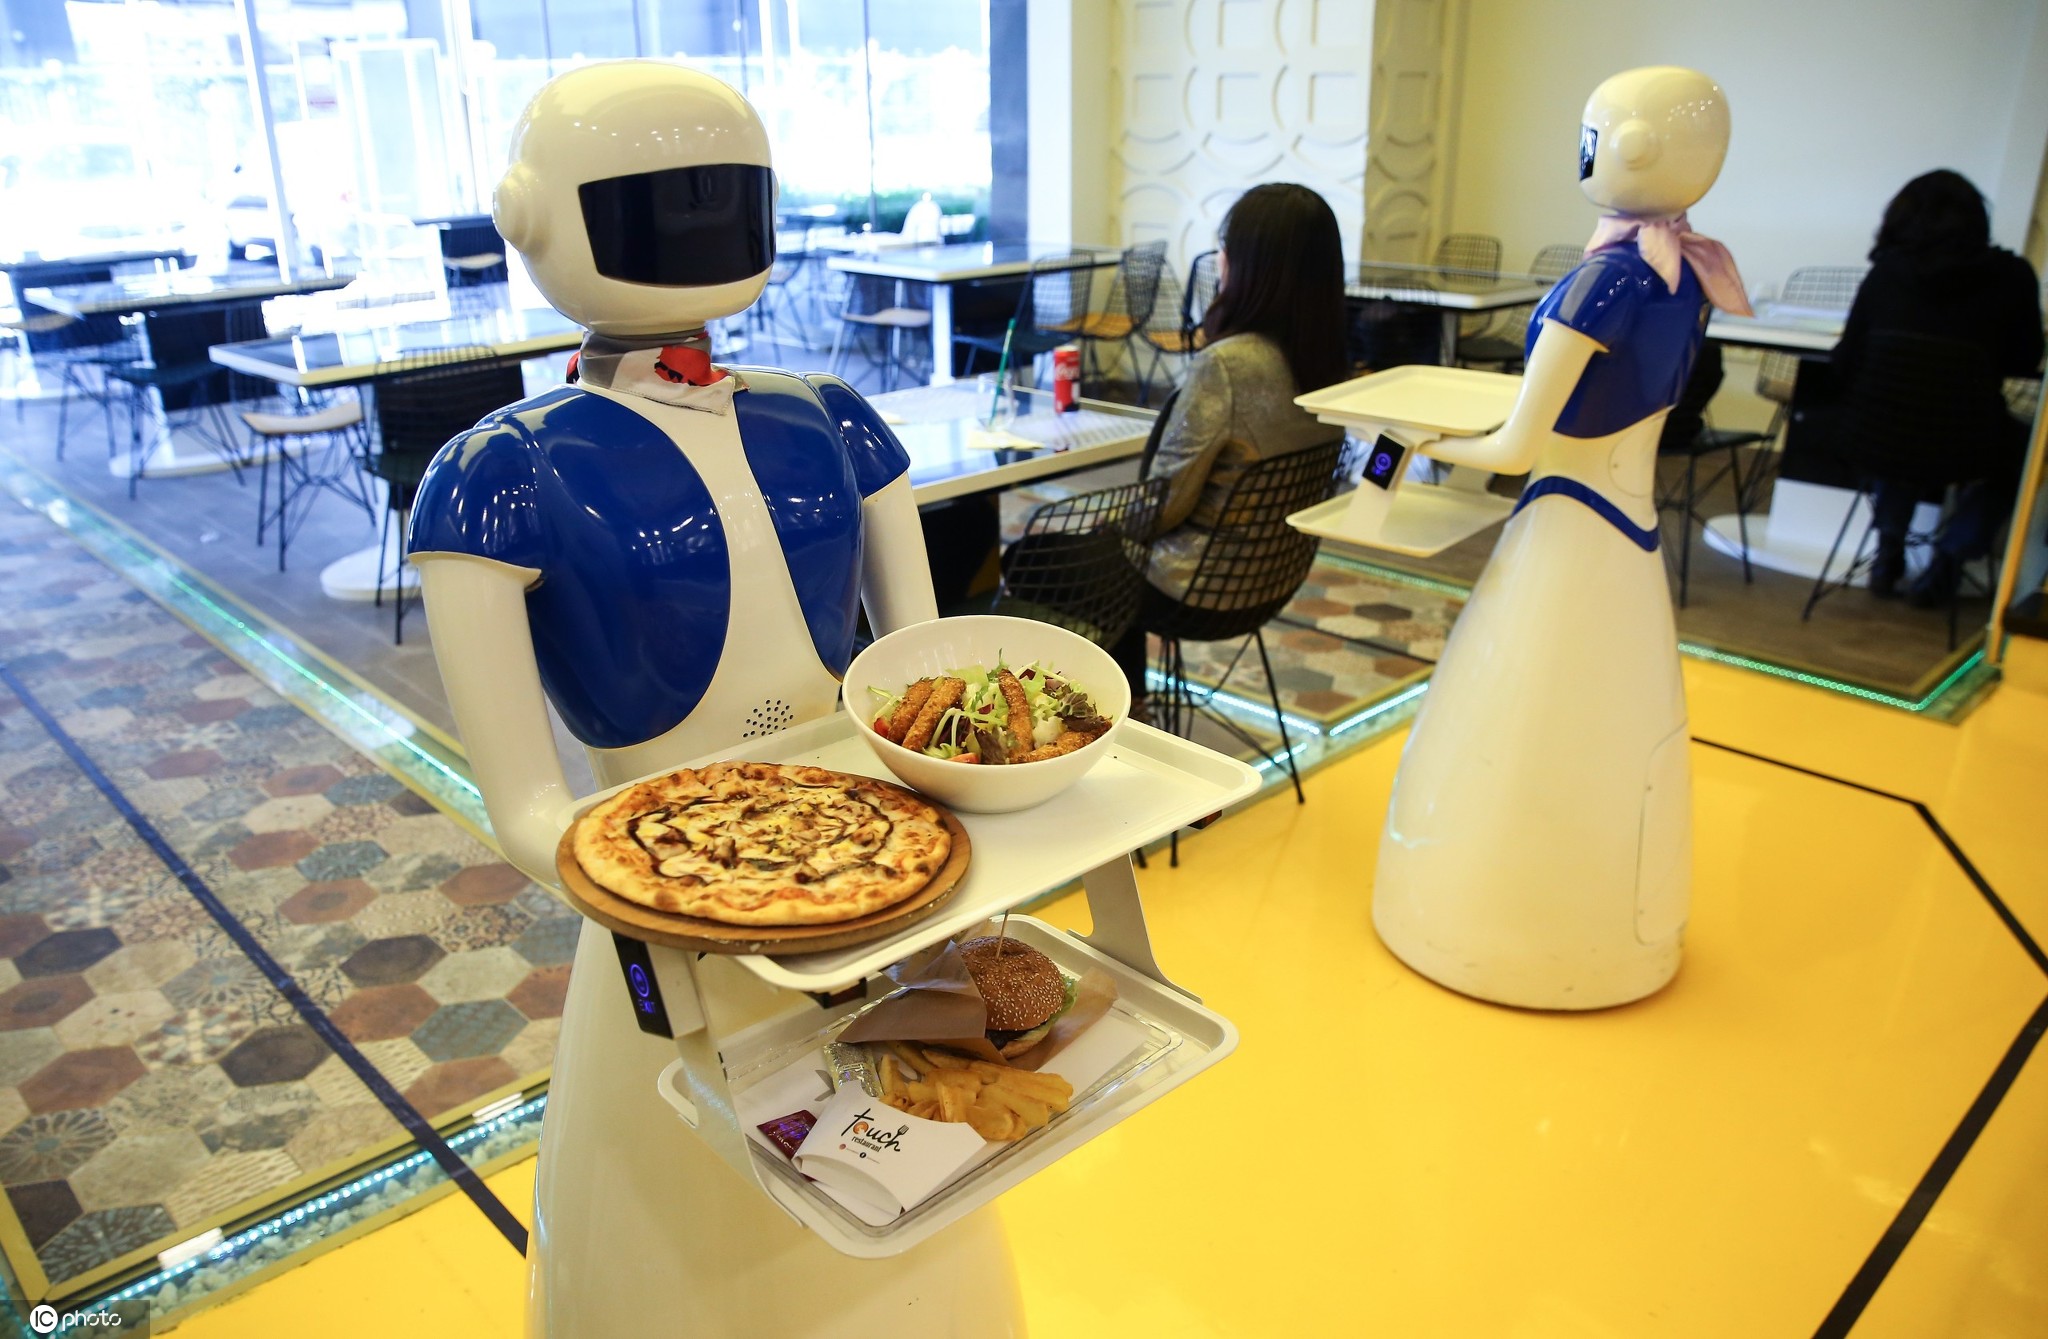 会做饭能搬运还可陪伴 越来越智能的机器人让幸福感